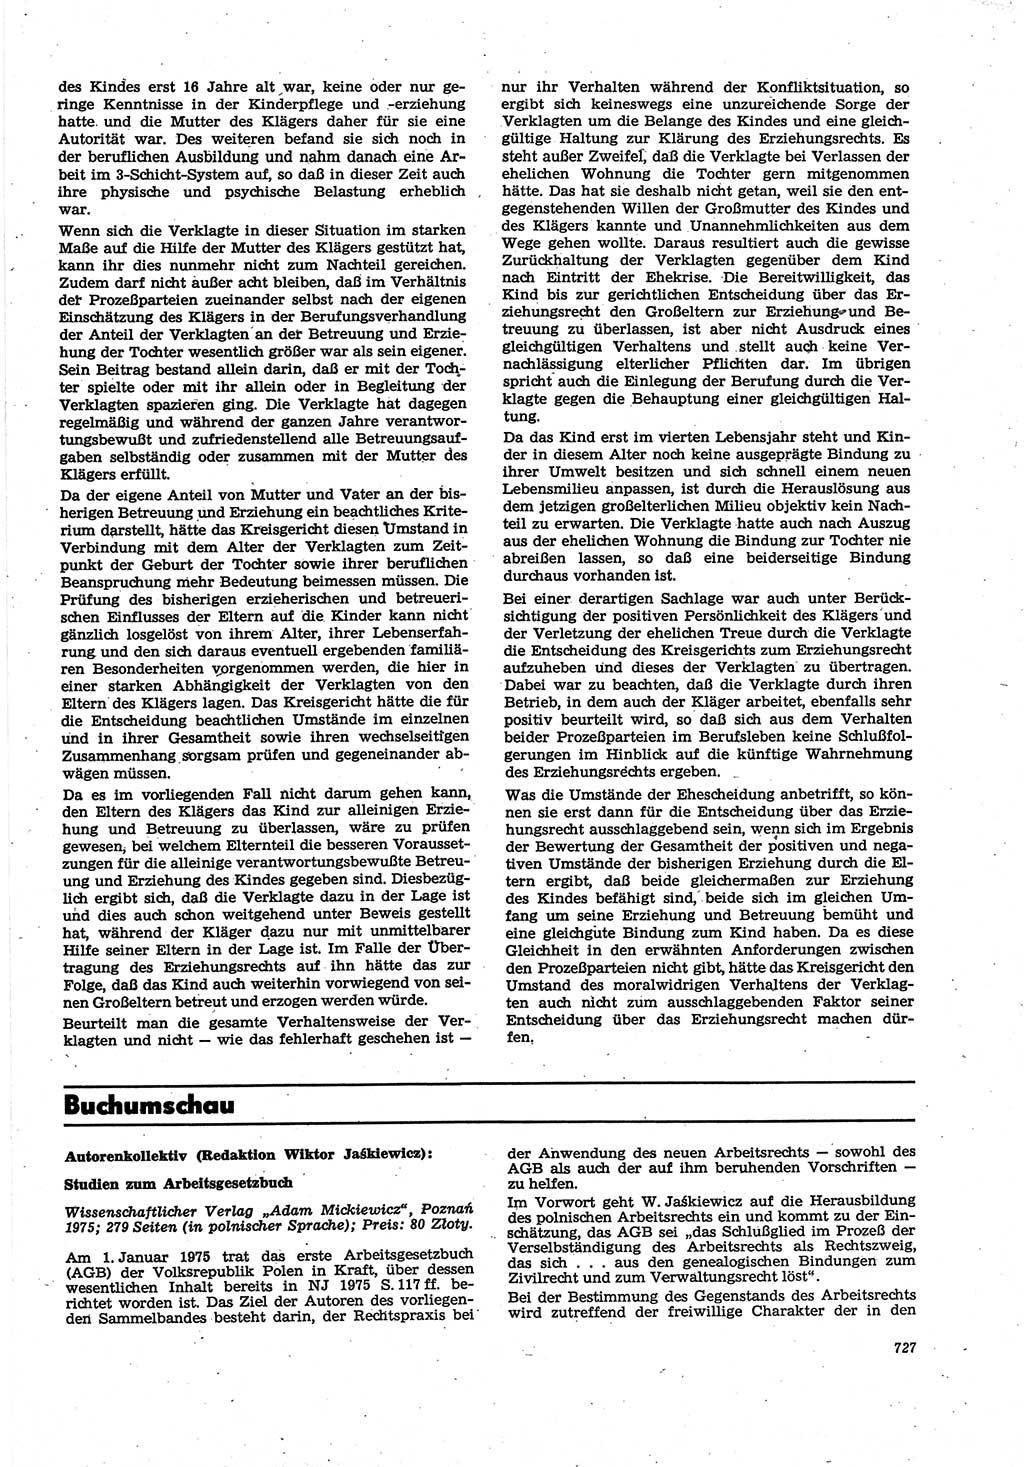 Neue Justiz (NJ), Zeitschrift für Recht und Rechtswissenschaft [Deutsche Demokratische Republik (DDR)], 30. Jahrgang 1976, Seite 727 (NJ DDR 1976, S. 727)